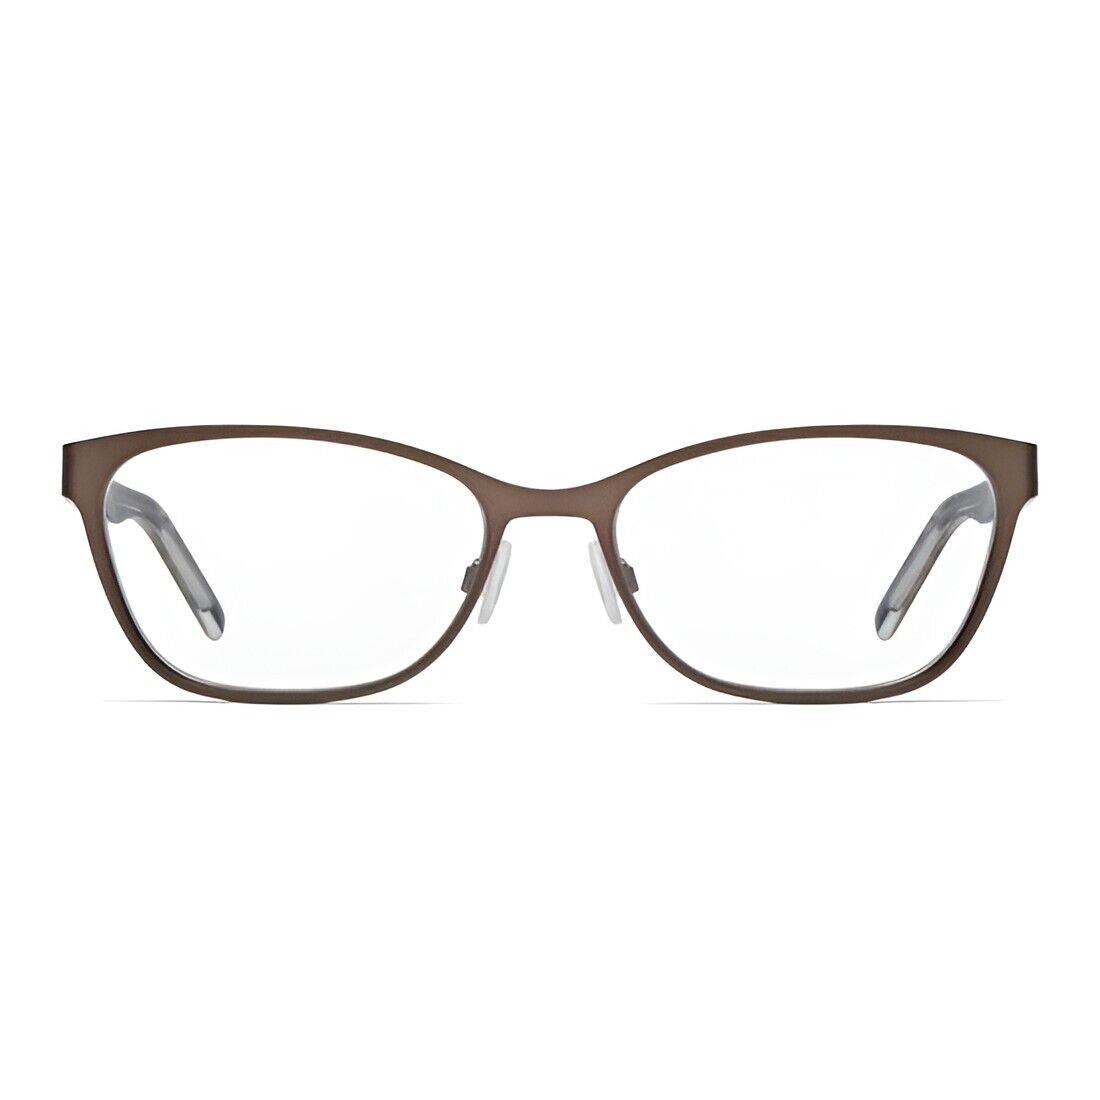 Hugo Boss Eyeglasses - HG 1008 Hgc - Metal Brown/havana 54-17-145